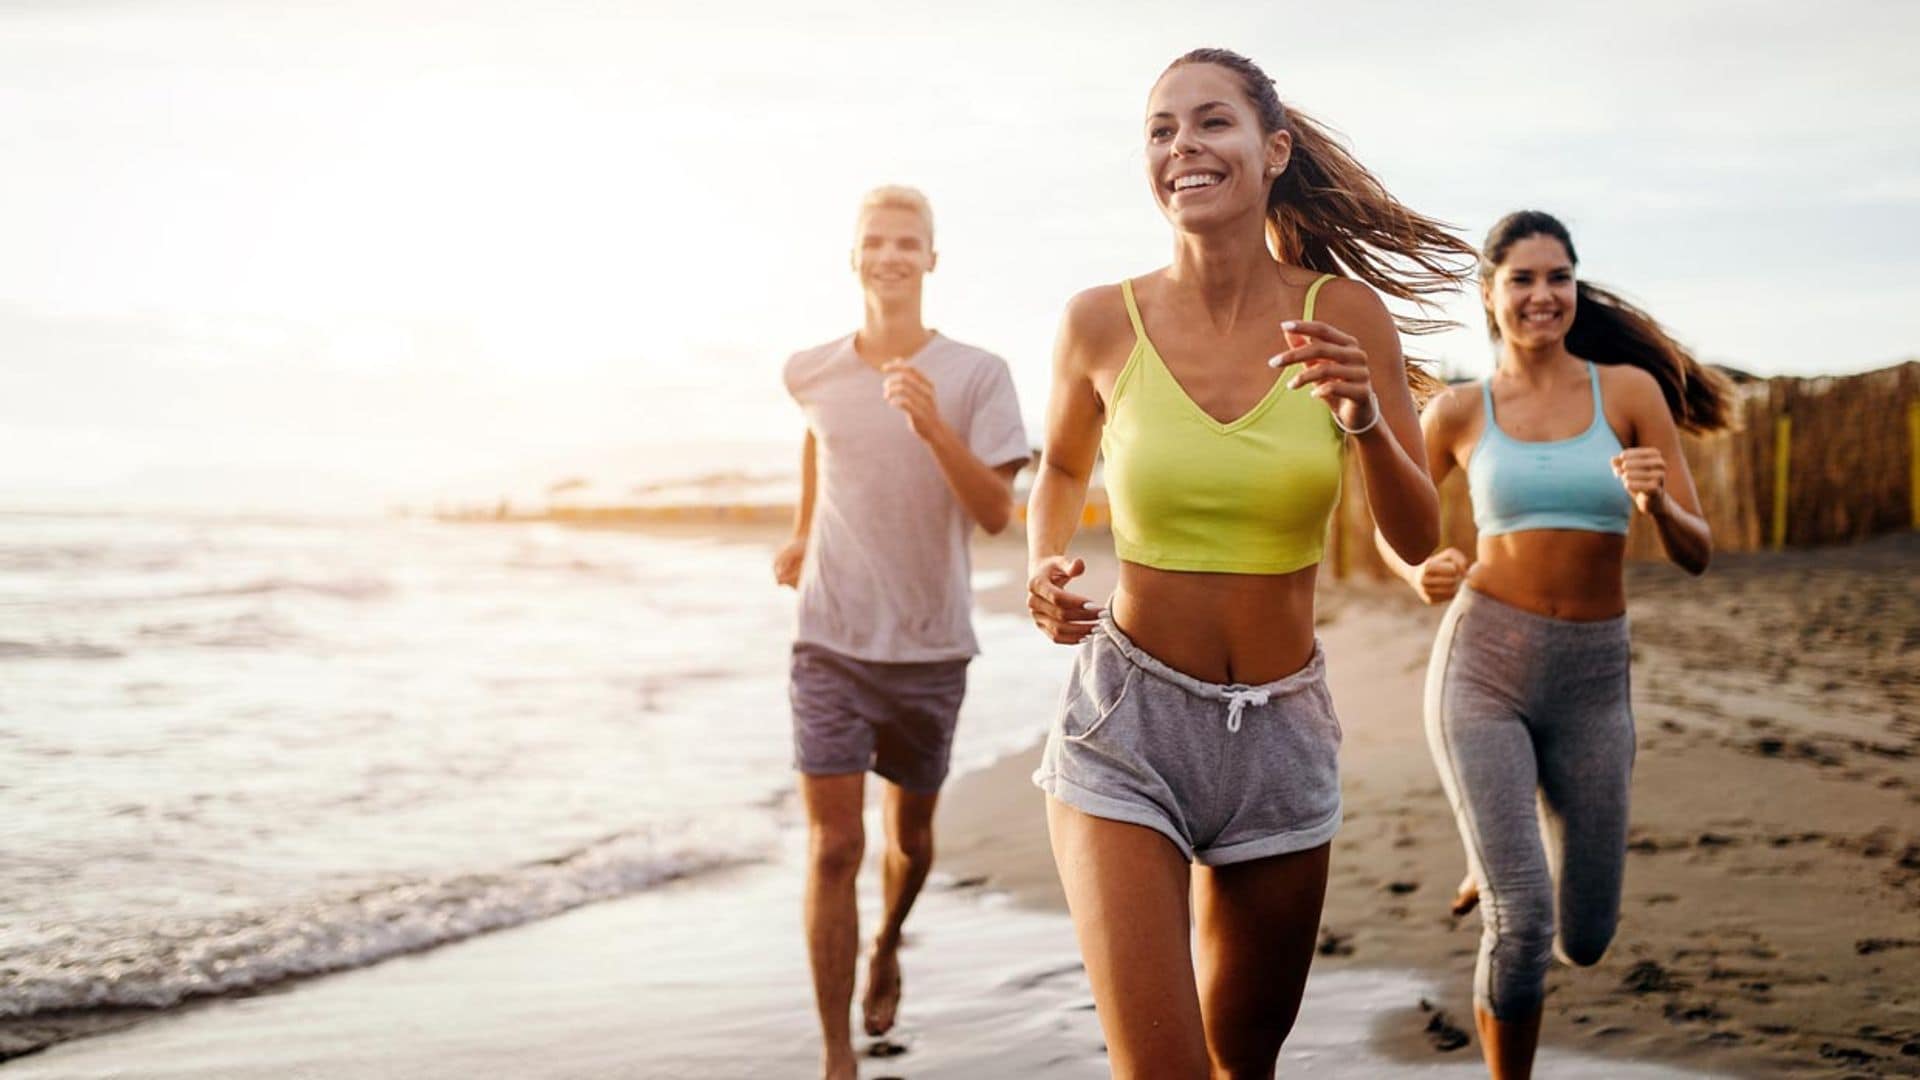 'Running' en verano: consejos para correr de forma segura en los meses más calurosos